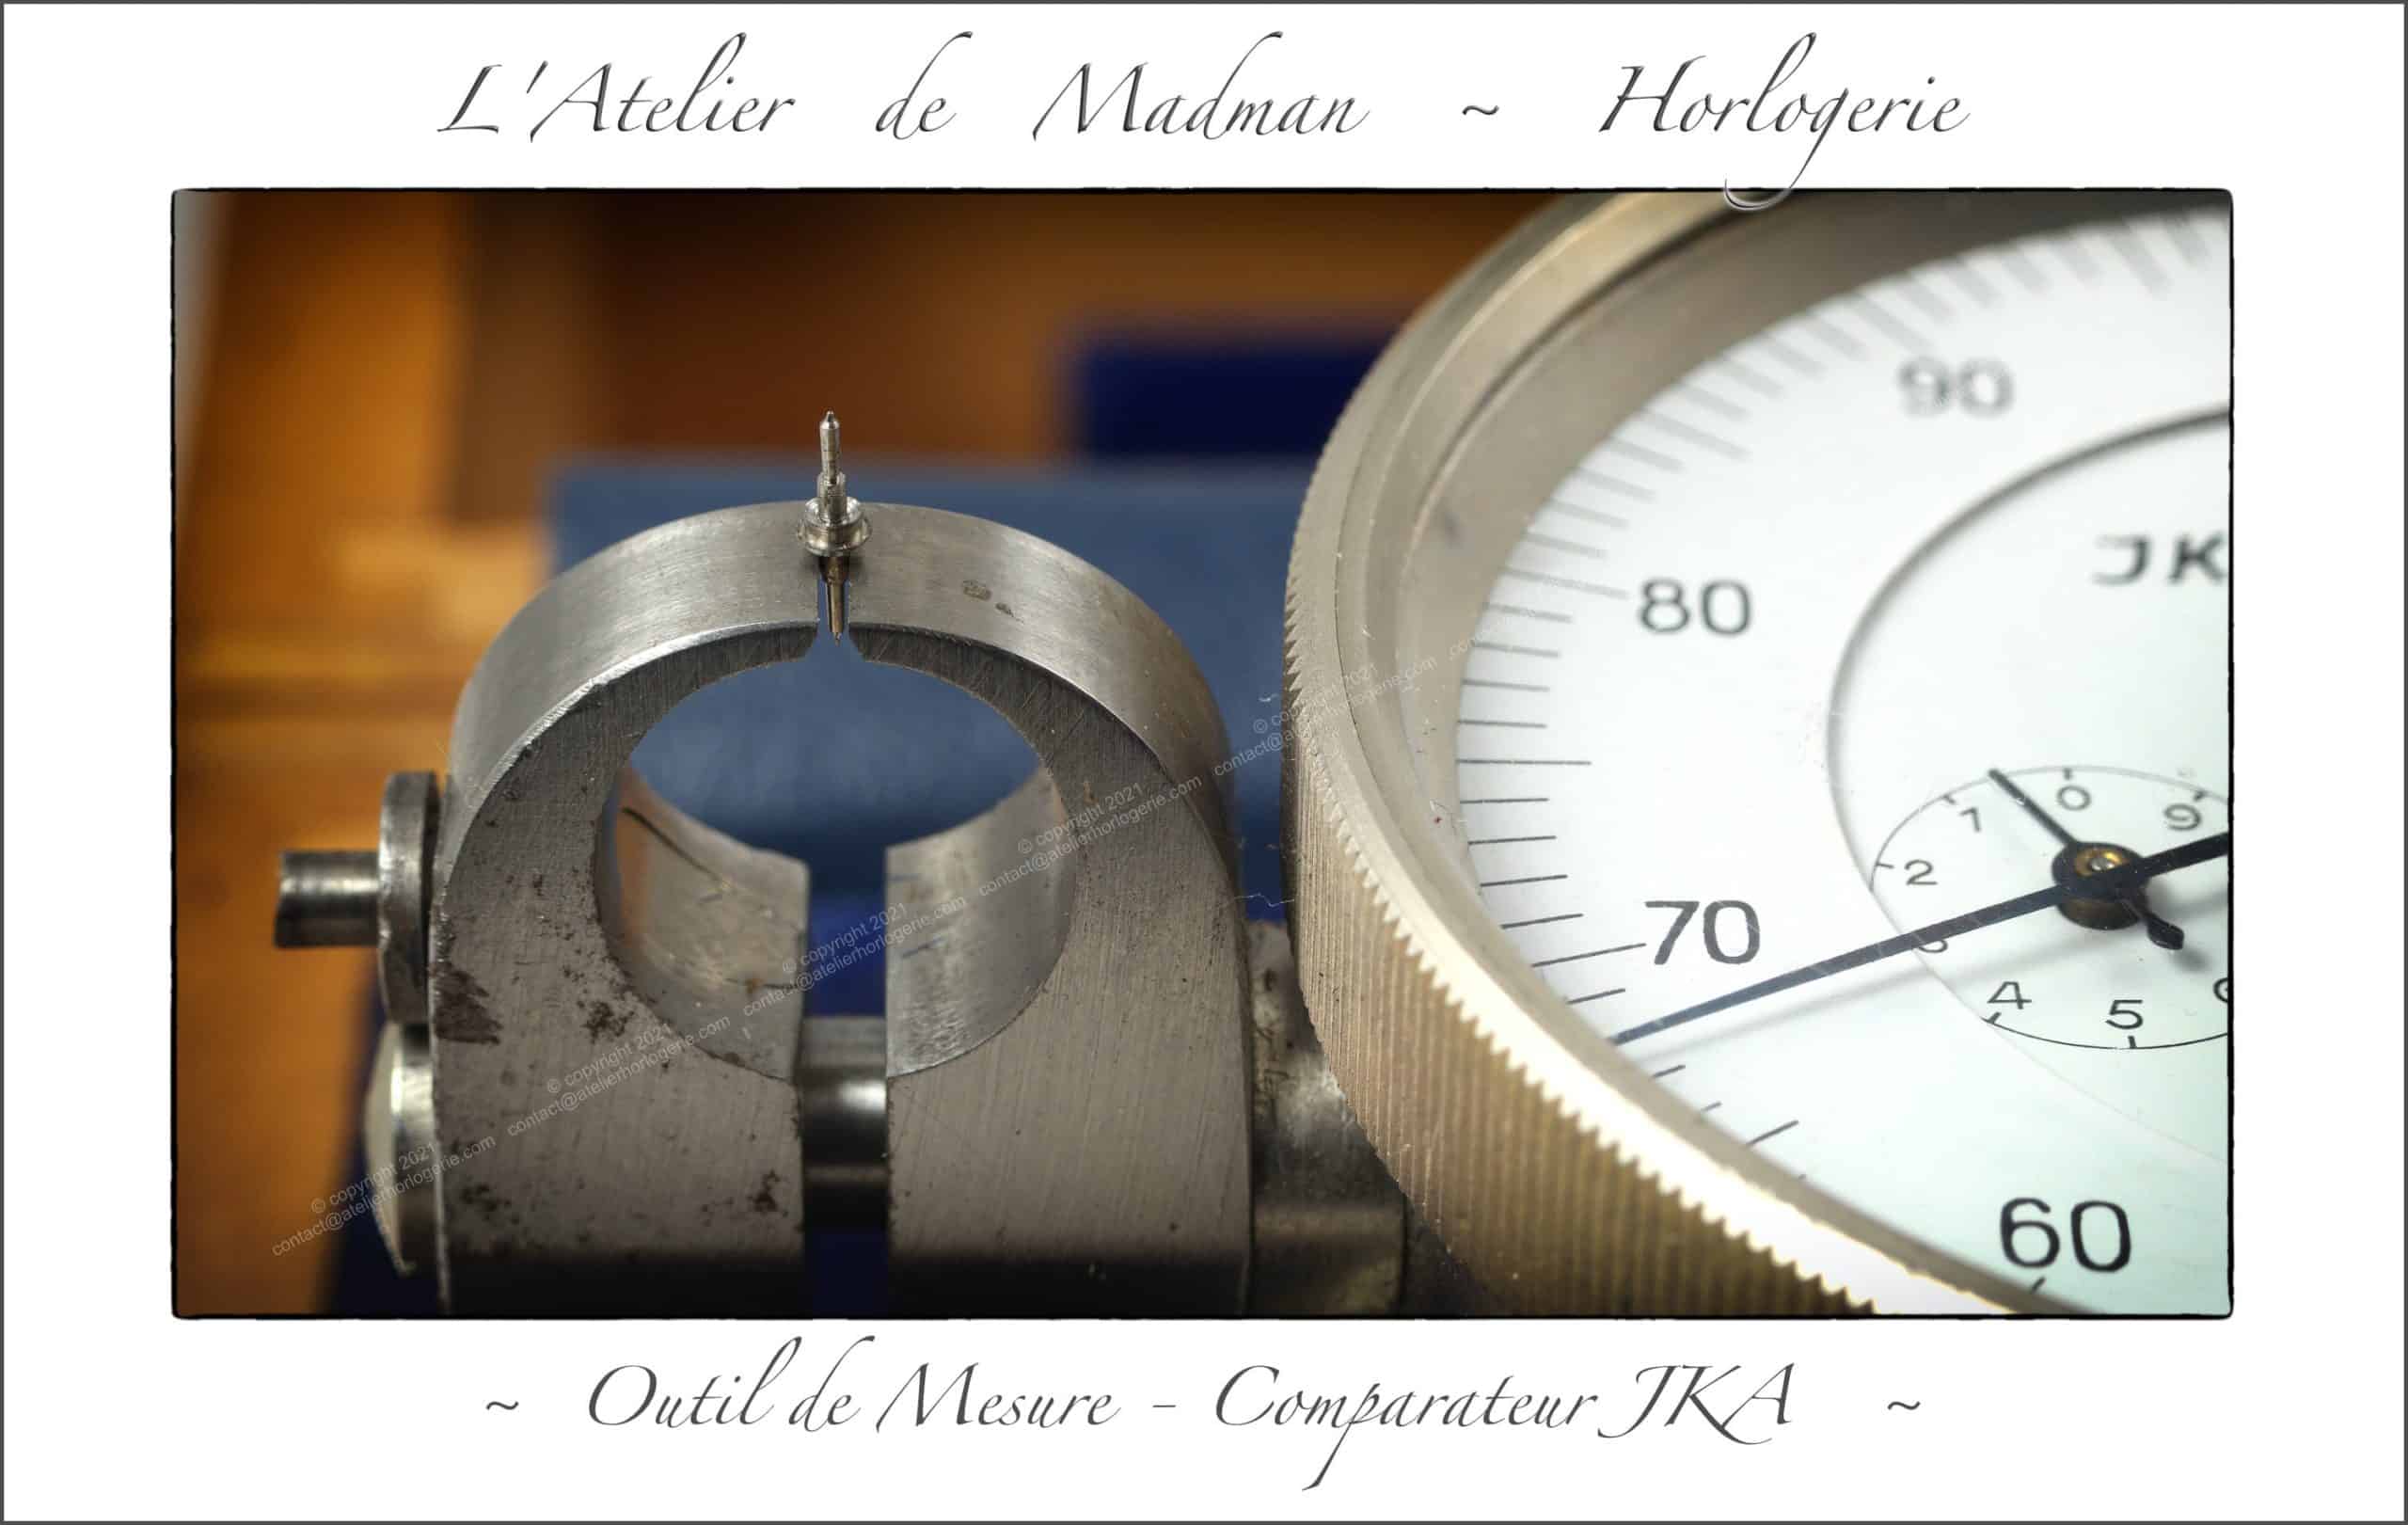 Outillage Horloger - Outils de Mesure - L'Atelier de Madman - Horlogerie